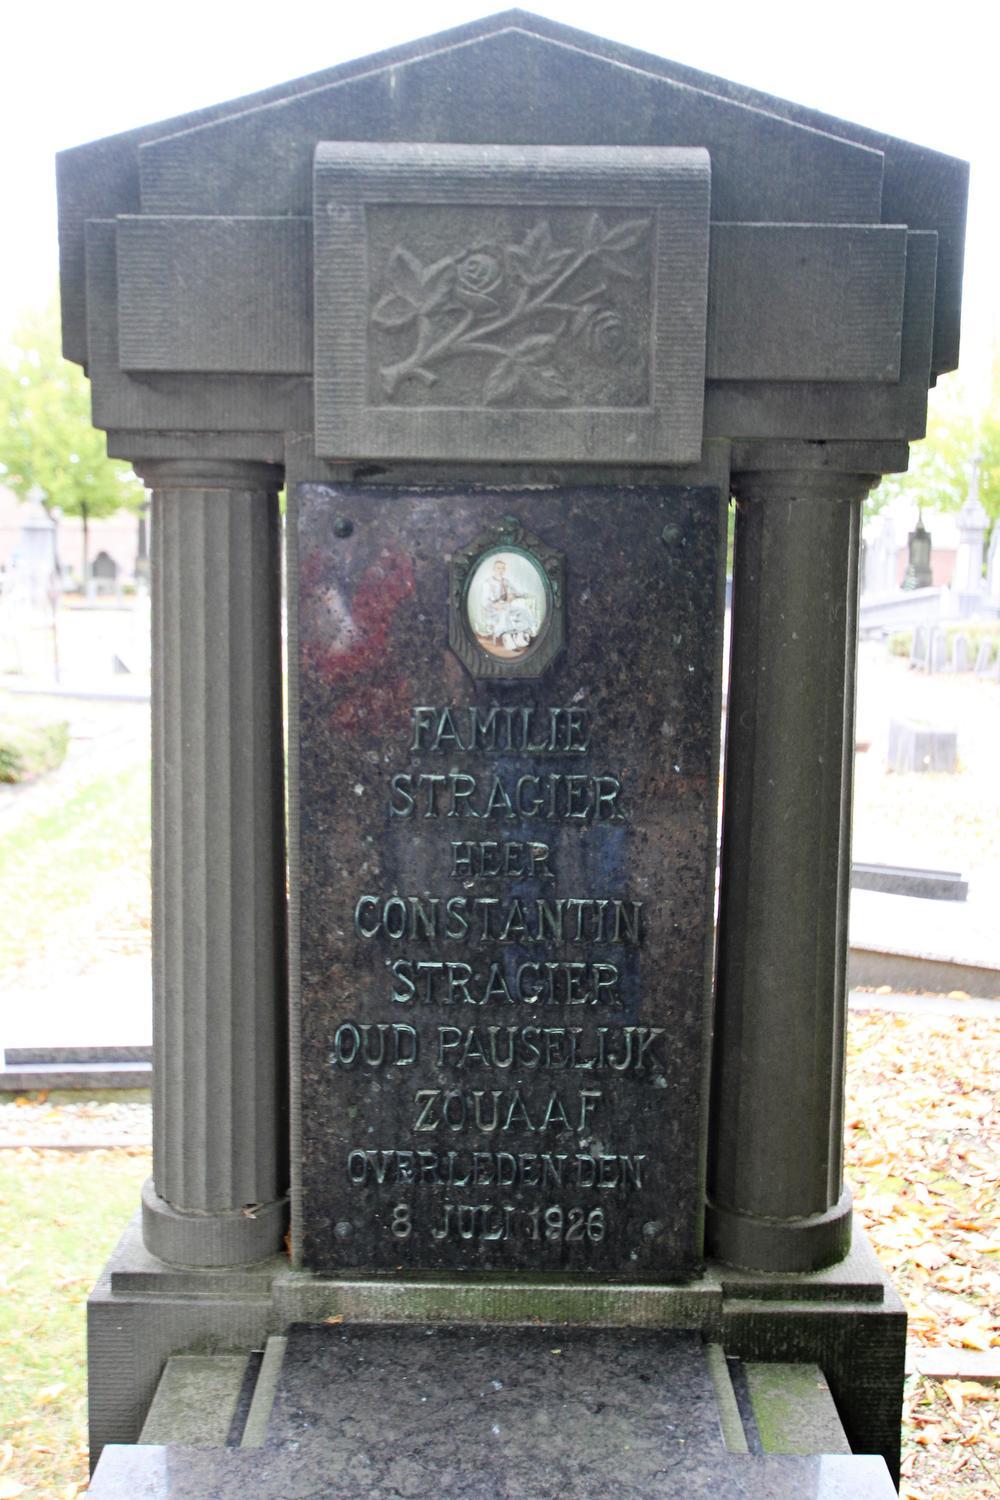 Constantin Stragier was in de 19de eeuw een zoeaaf. Zijn graf is intussen beschermd. (Foto JVGK)